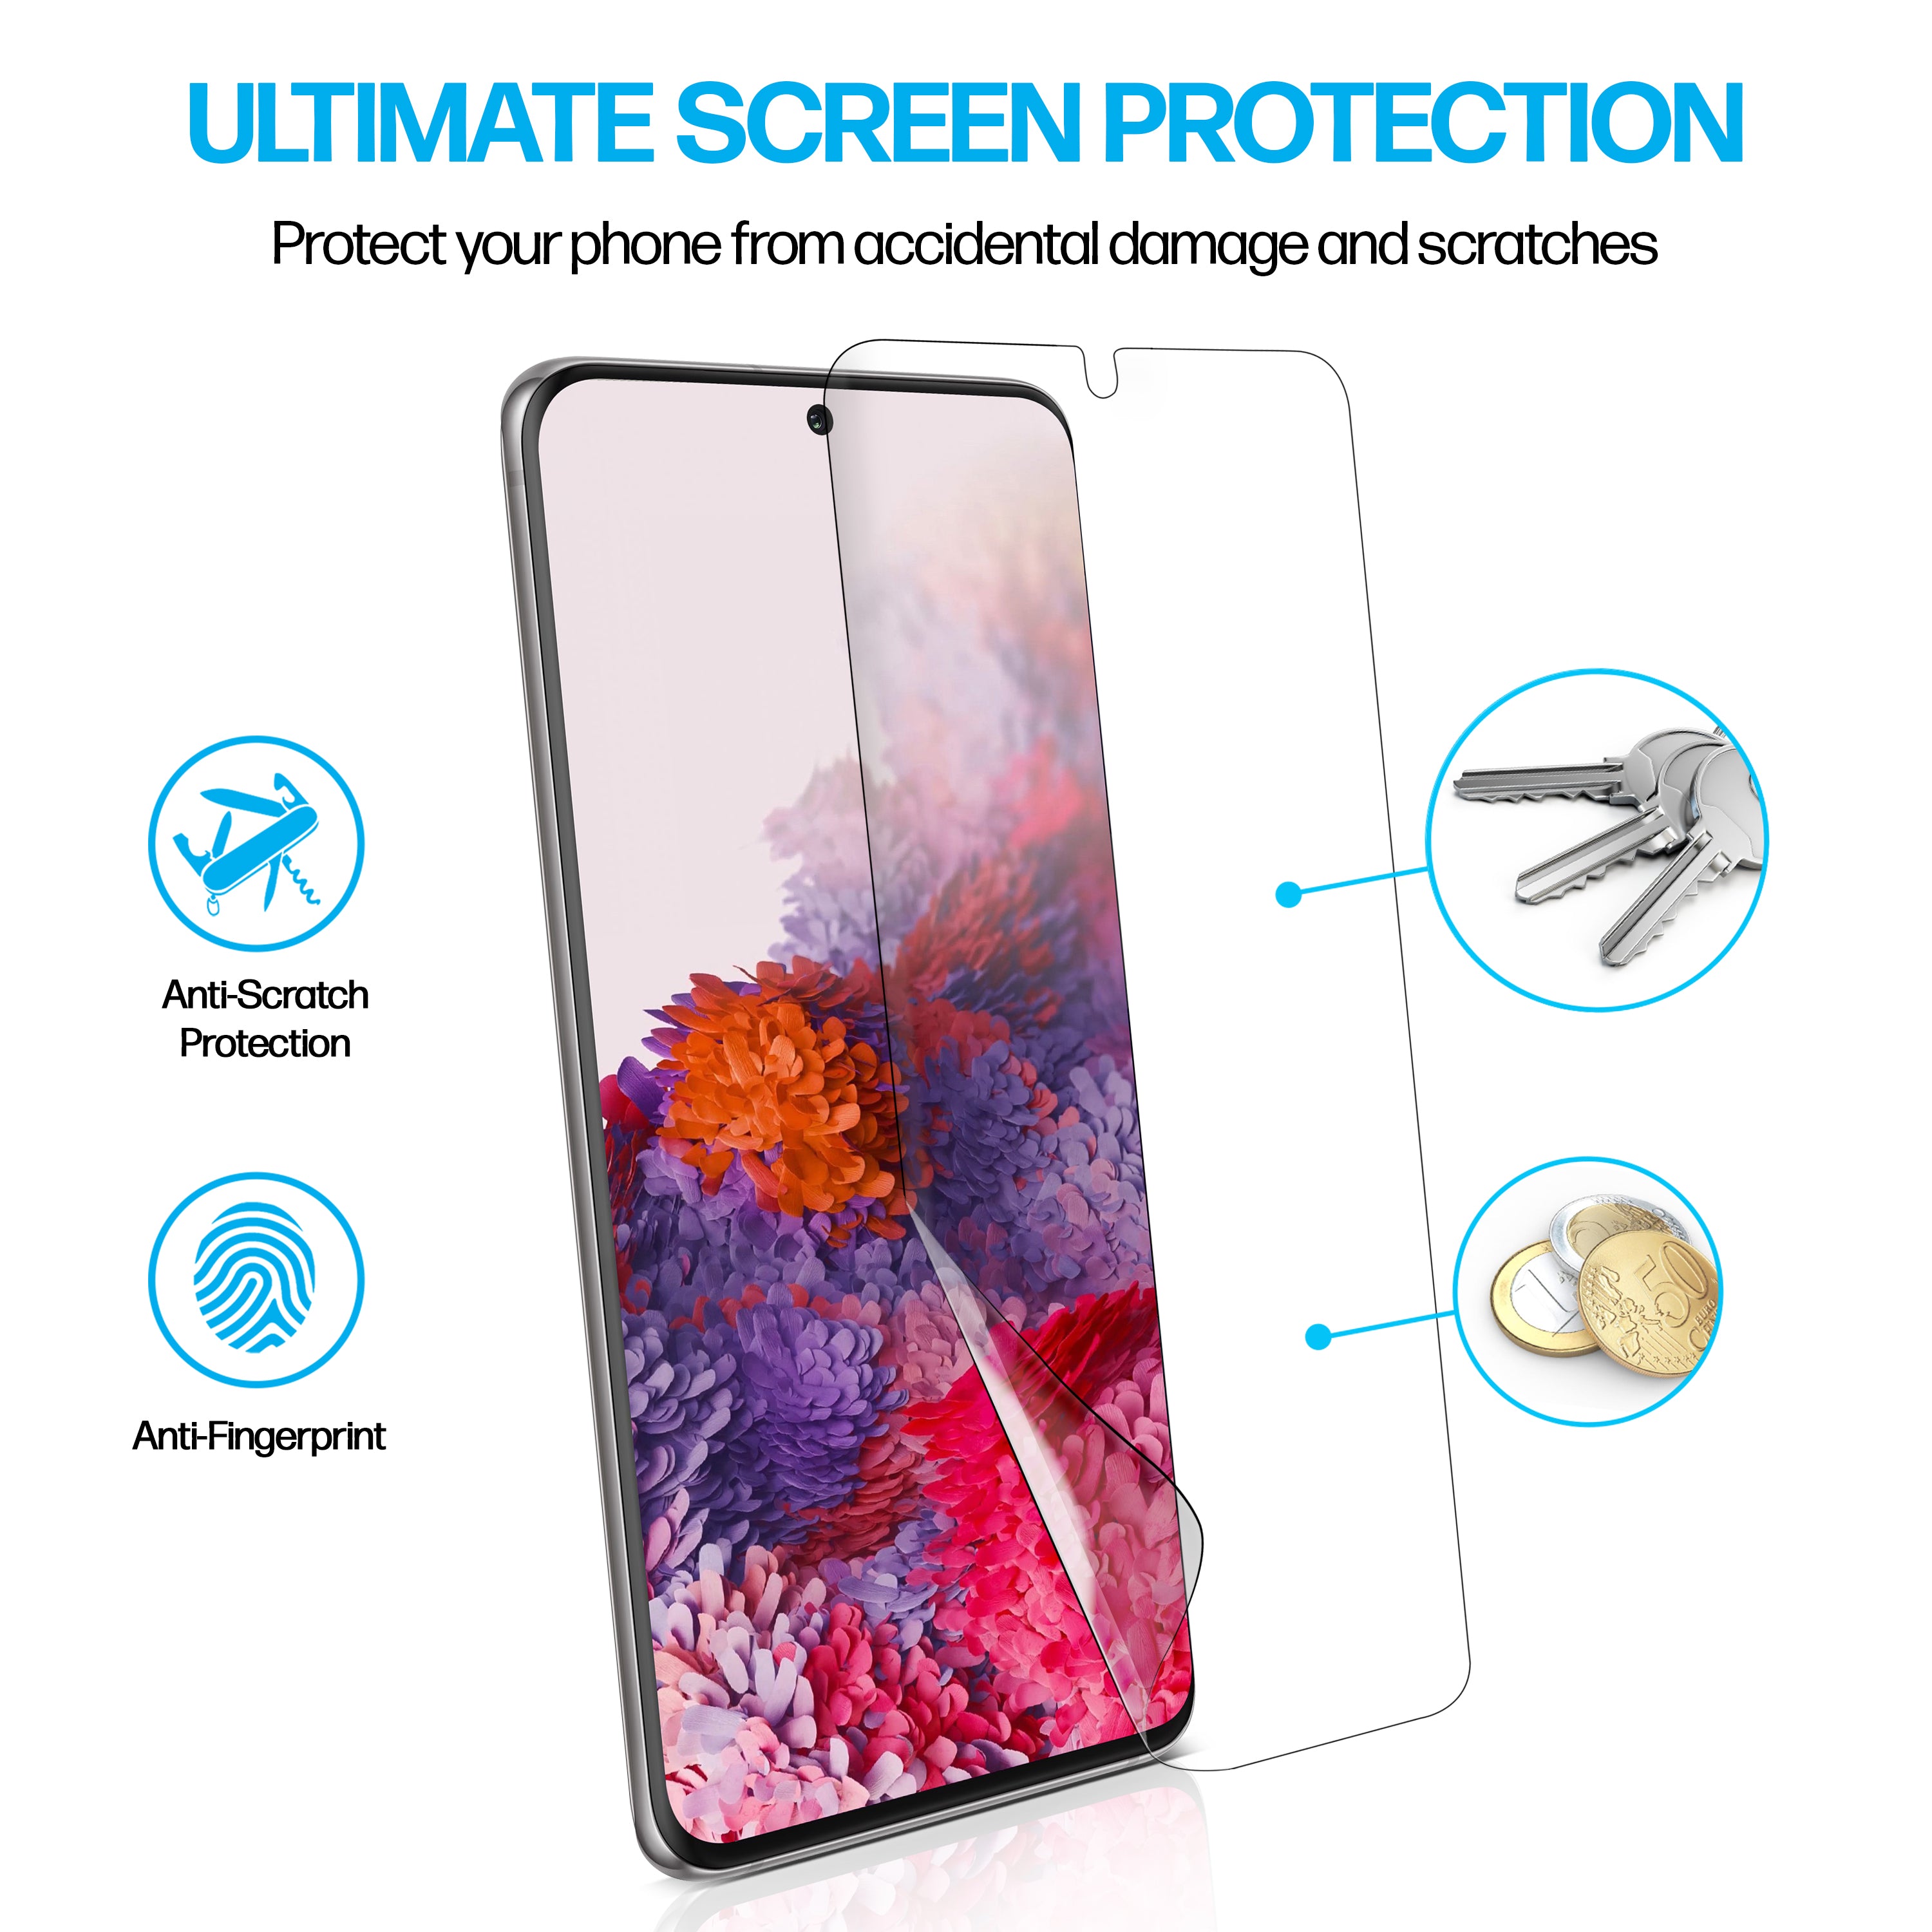 Samsung Galaxy S20 TPU Anti-Scratch Screen Protector Film [2-Pack]